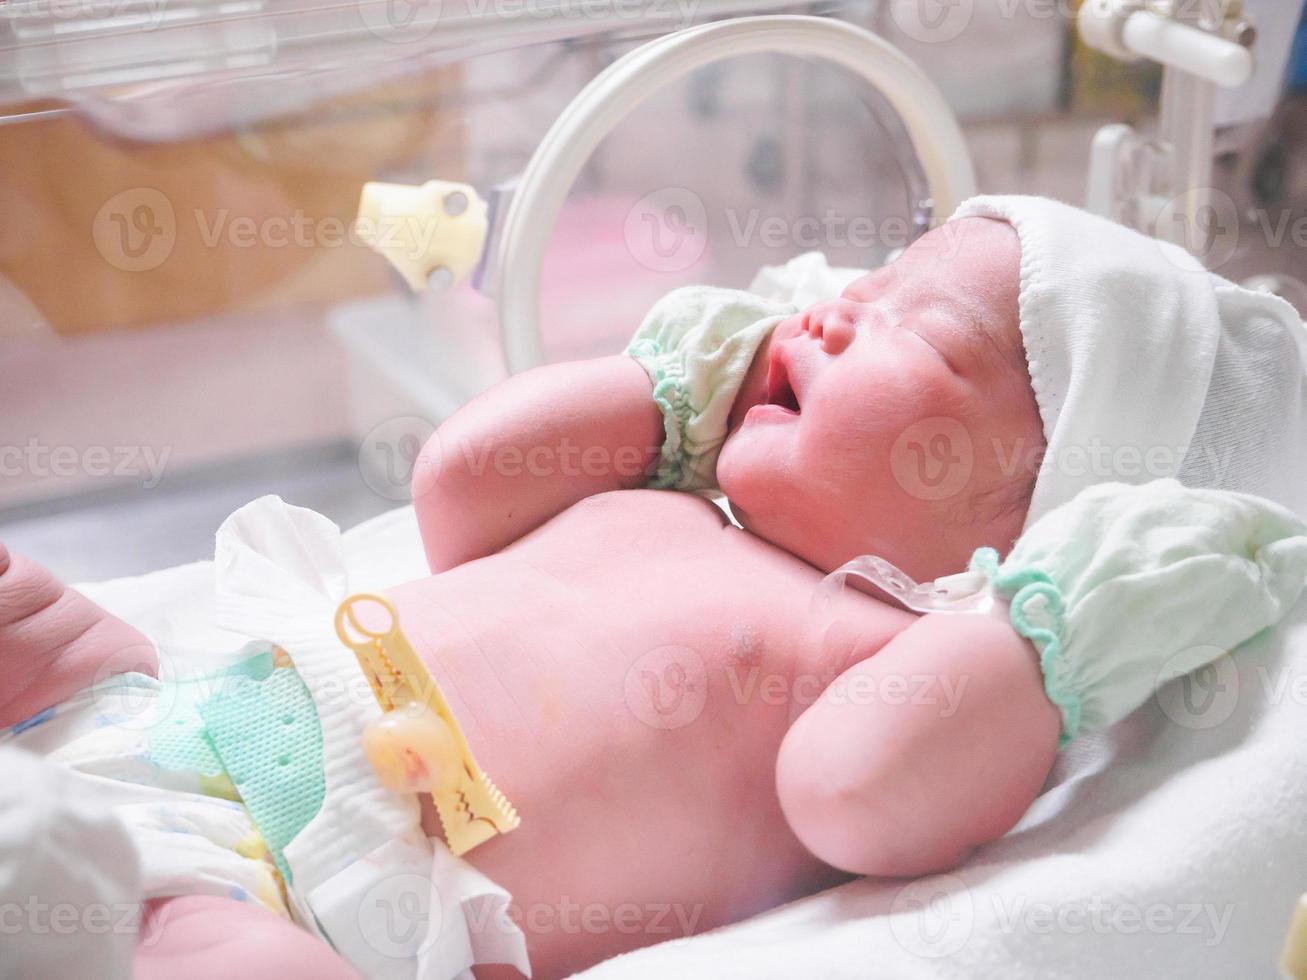 nouveau-né bébé sommeil dans l'incubateur à l'hôpital photo